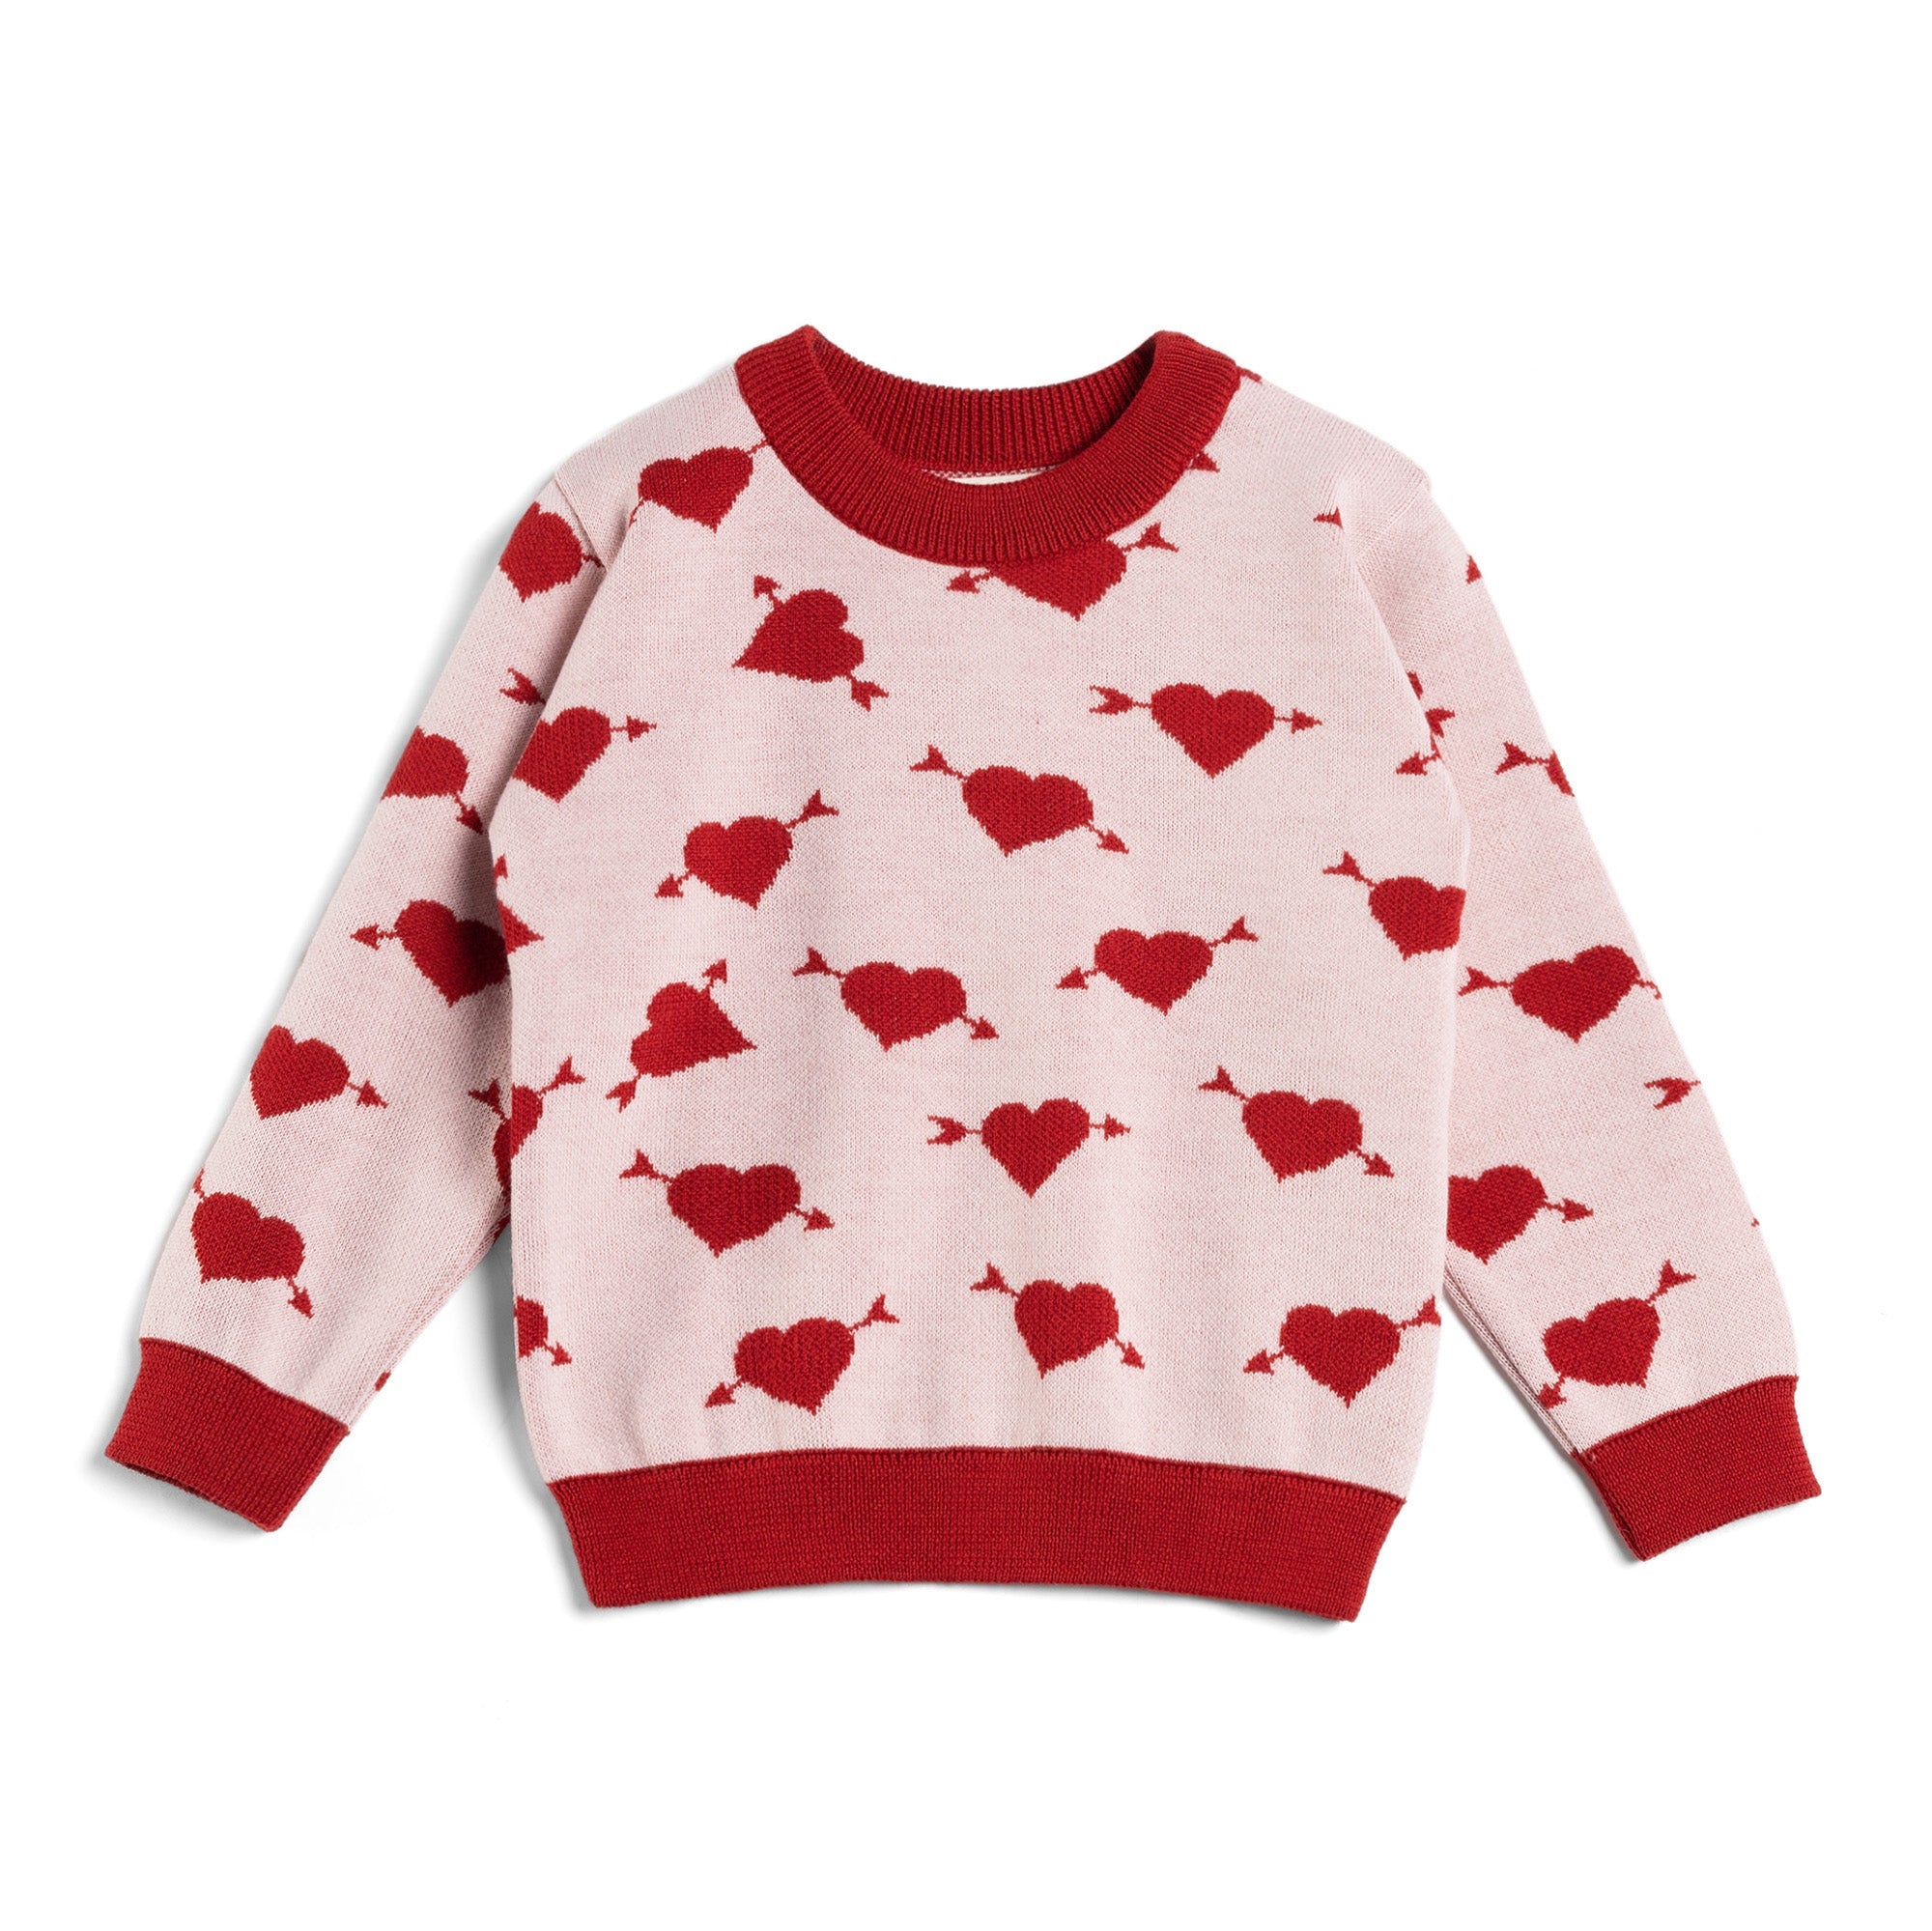 Historia de los niños: suéter Merino Sweet Heart